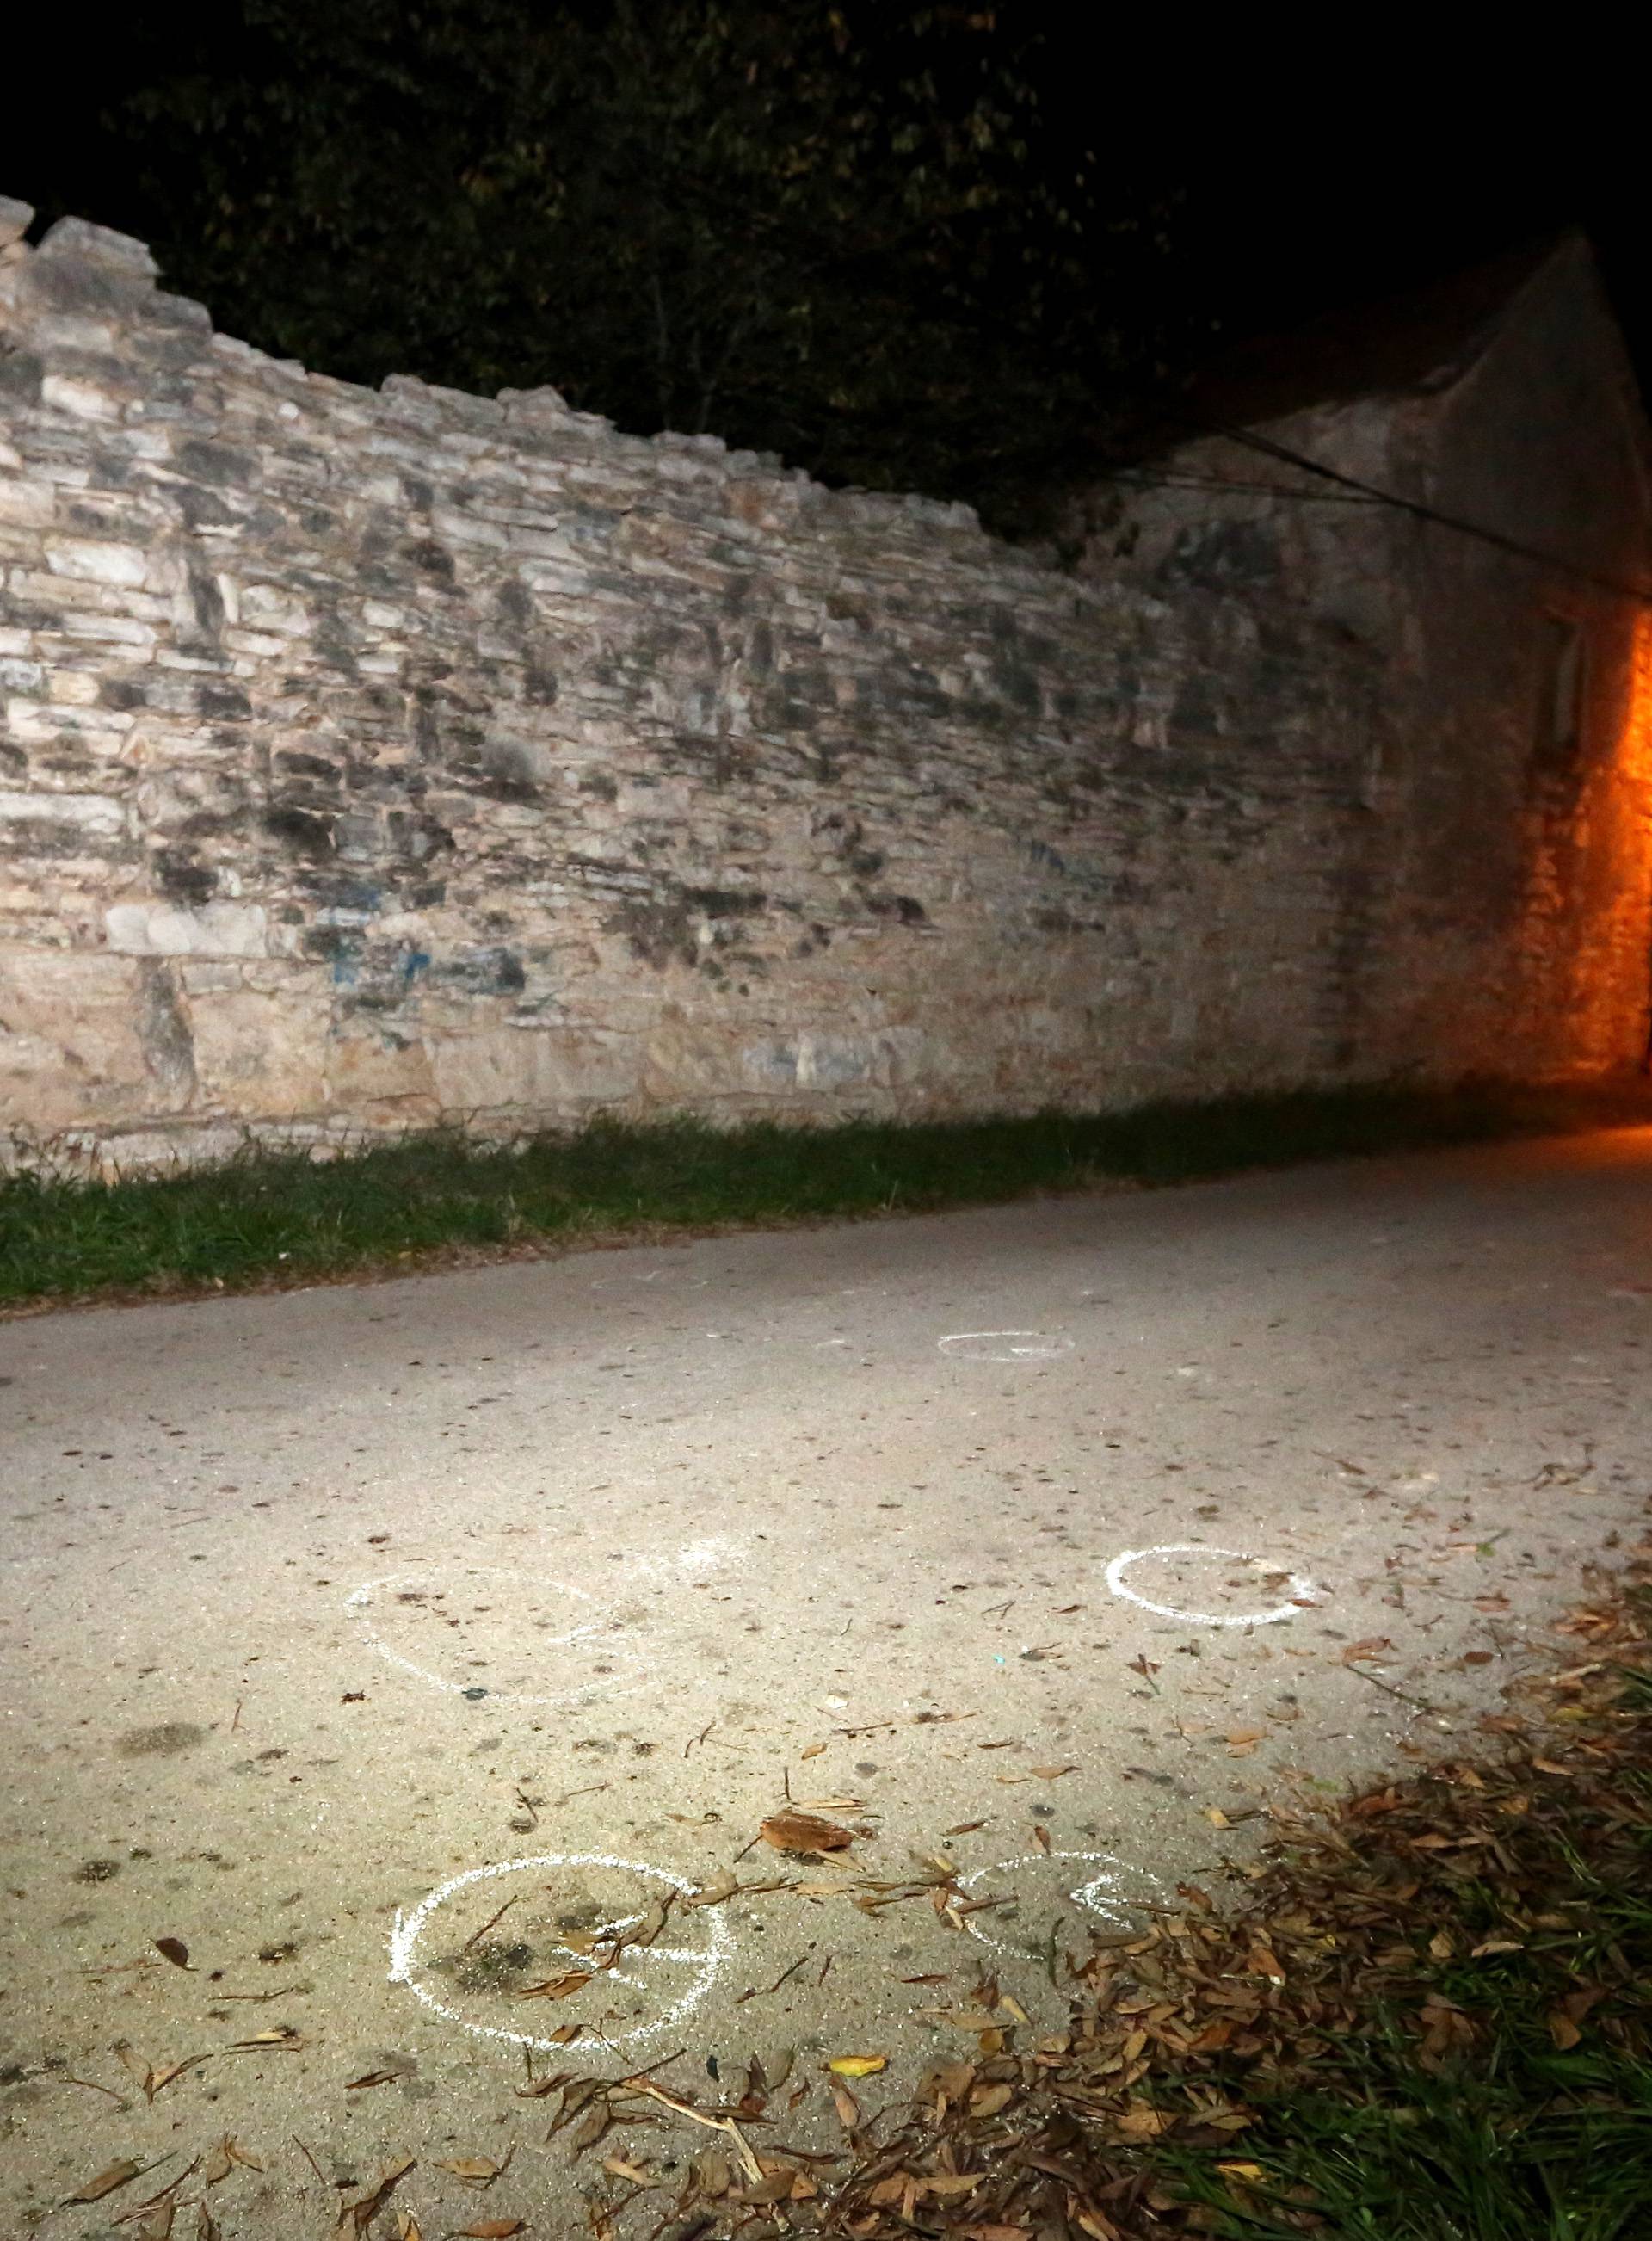 Mještani Kistanja: Ta bomba sigurno nije bila prije u baraci